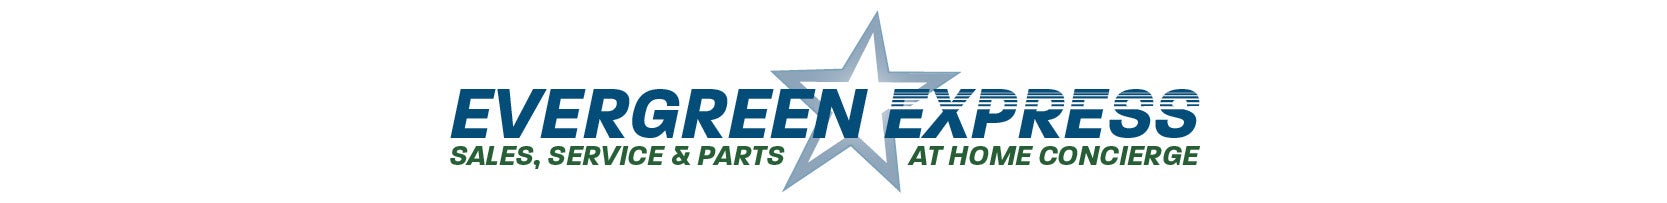 Evergreen Express